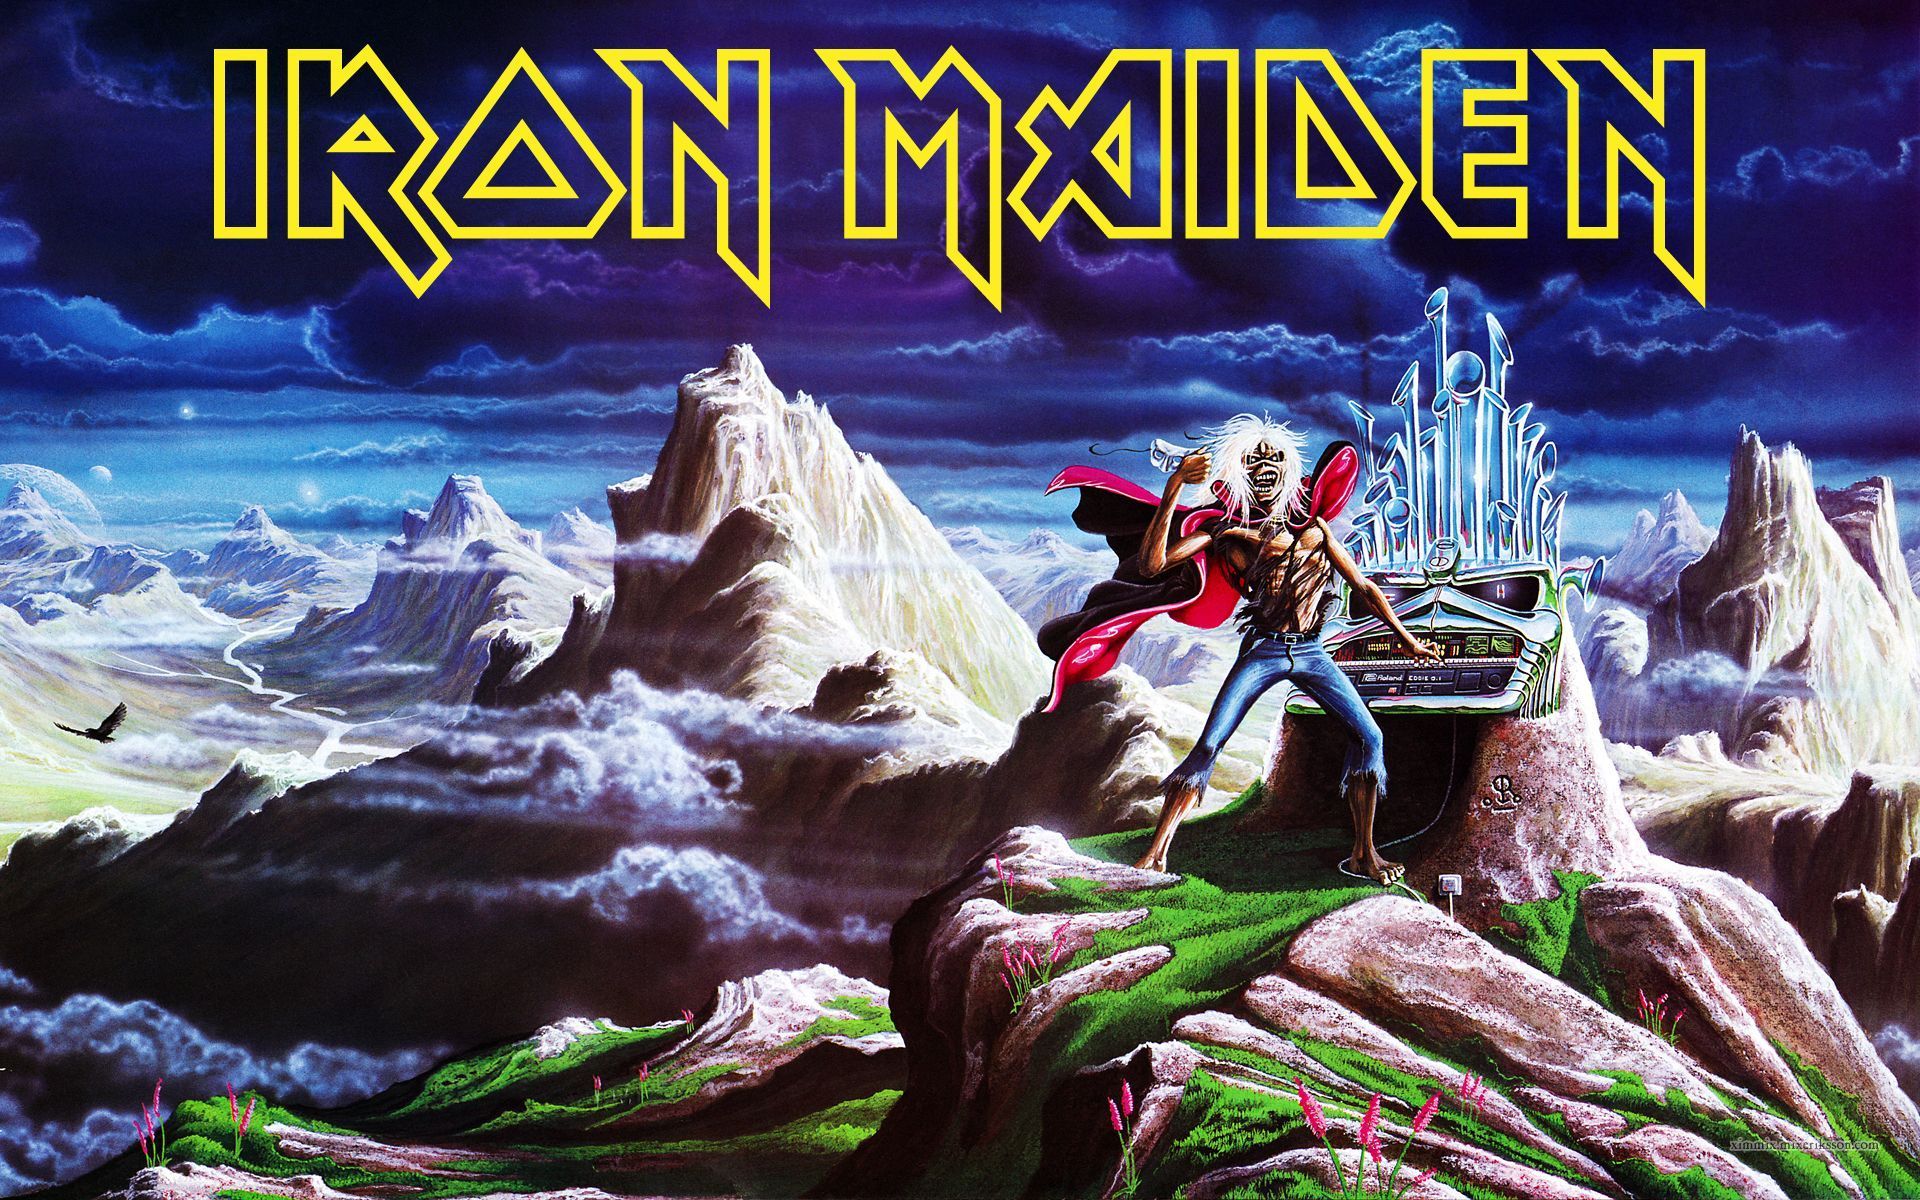 Iron Maiden Wallpaper | 1920x1200 | ID:46384